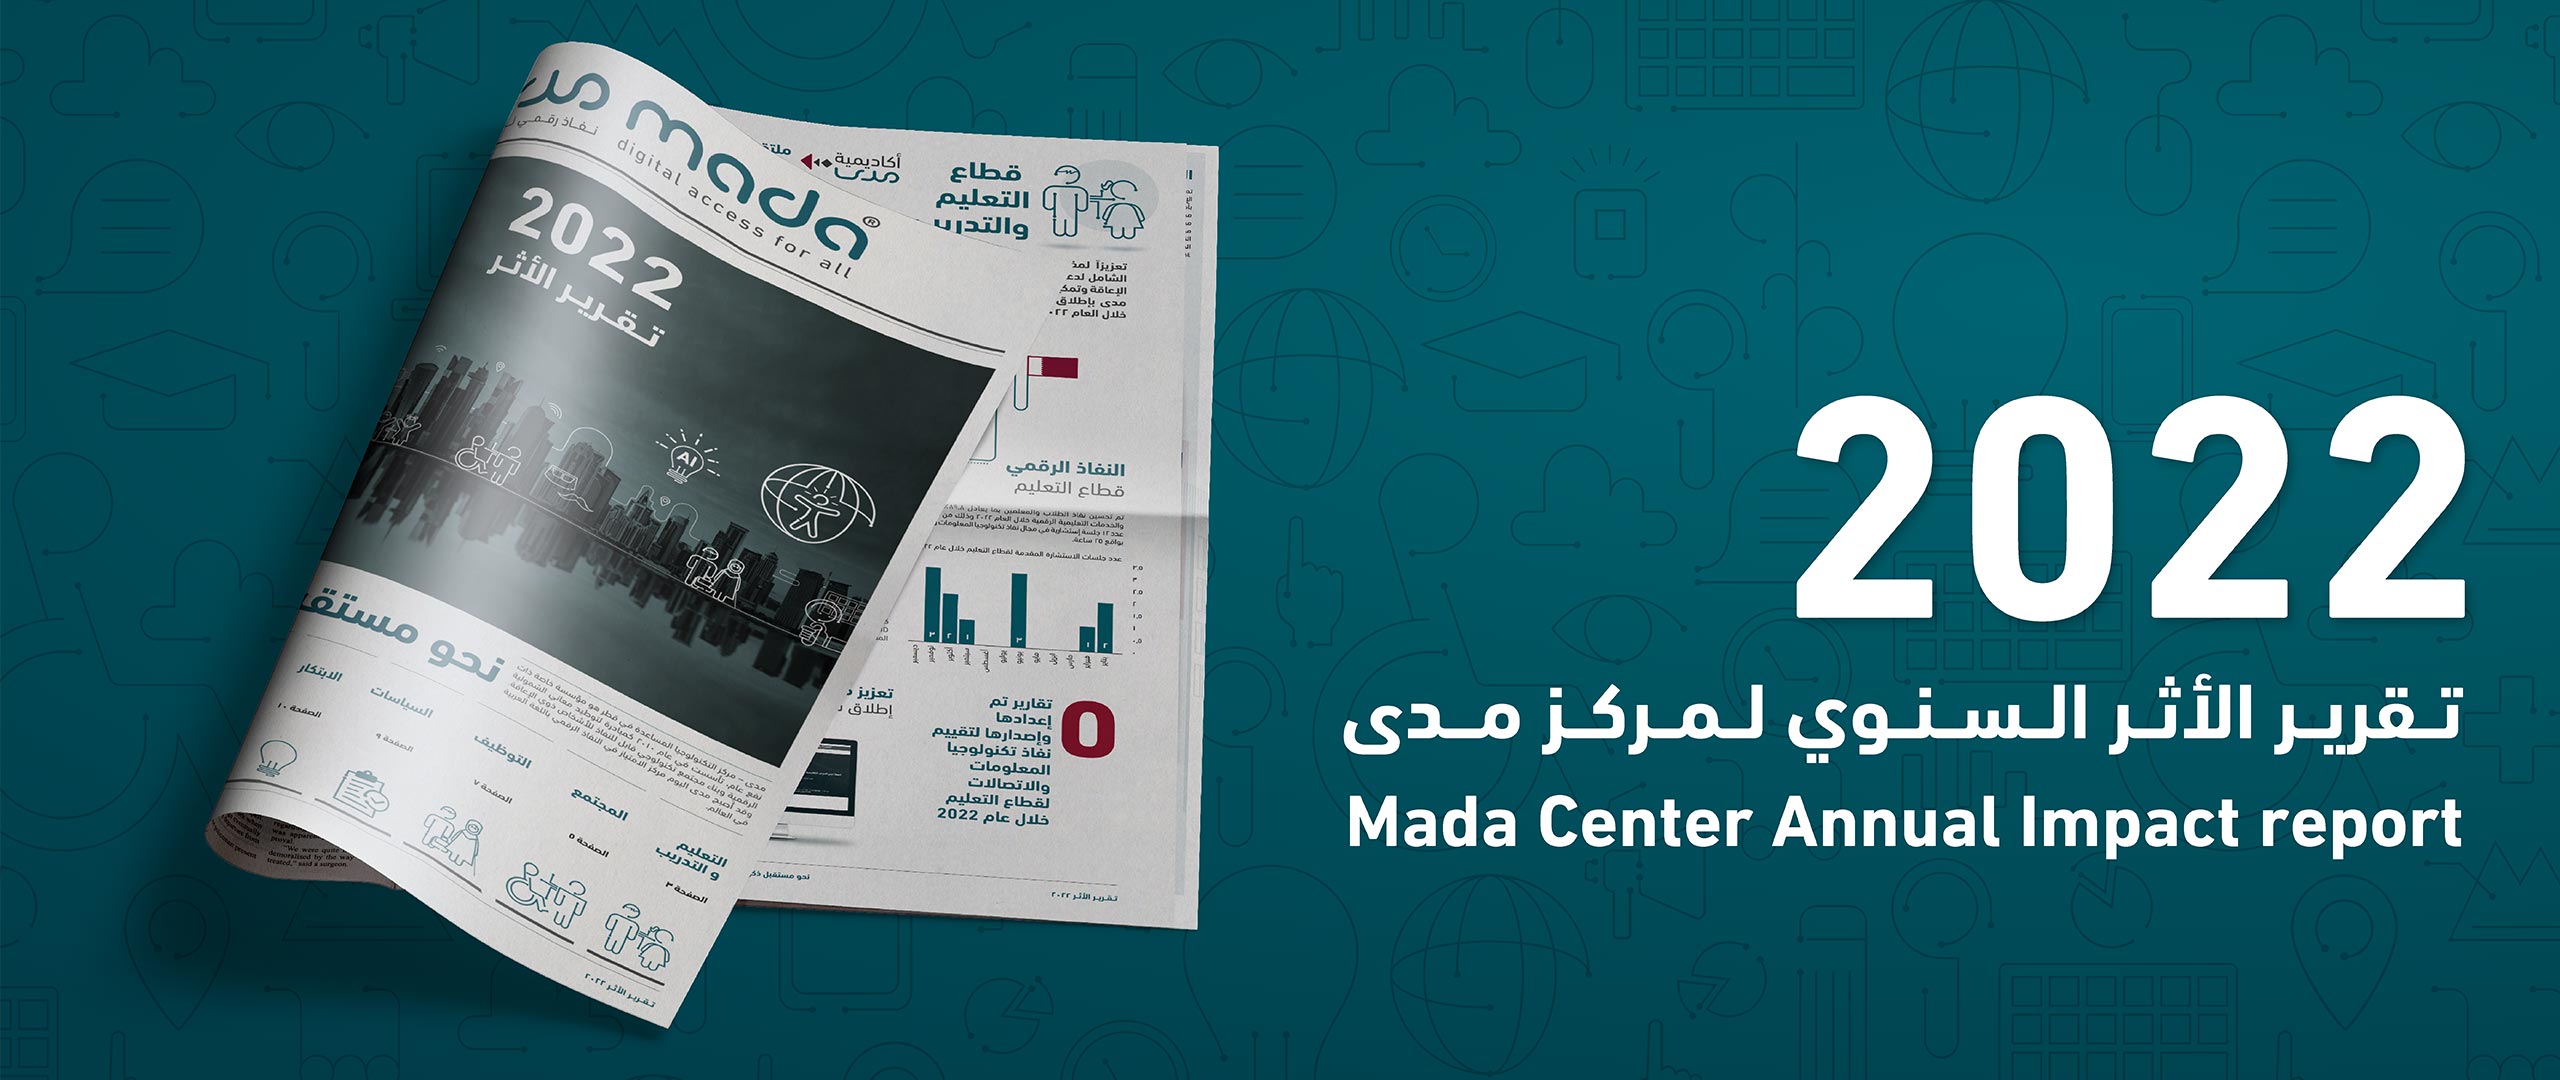 Mada Center Annual Impact Report 2022